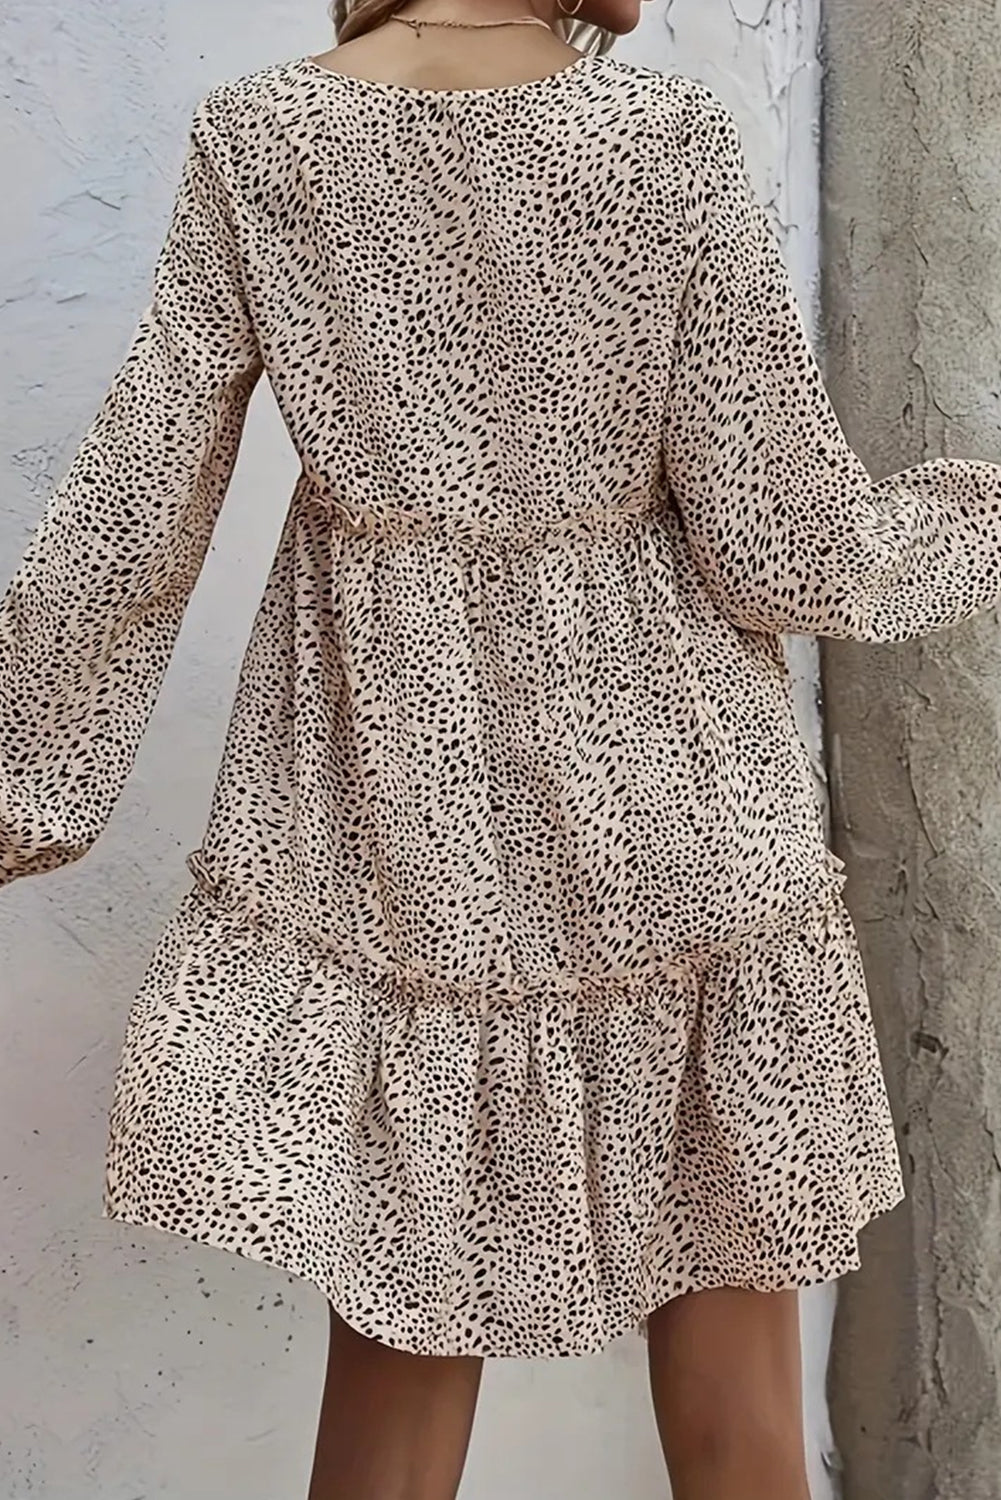 Apricot Leopard Print Flowy Frill Tiered Mini Dress